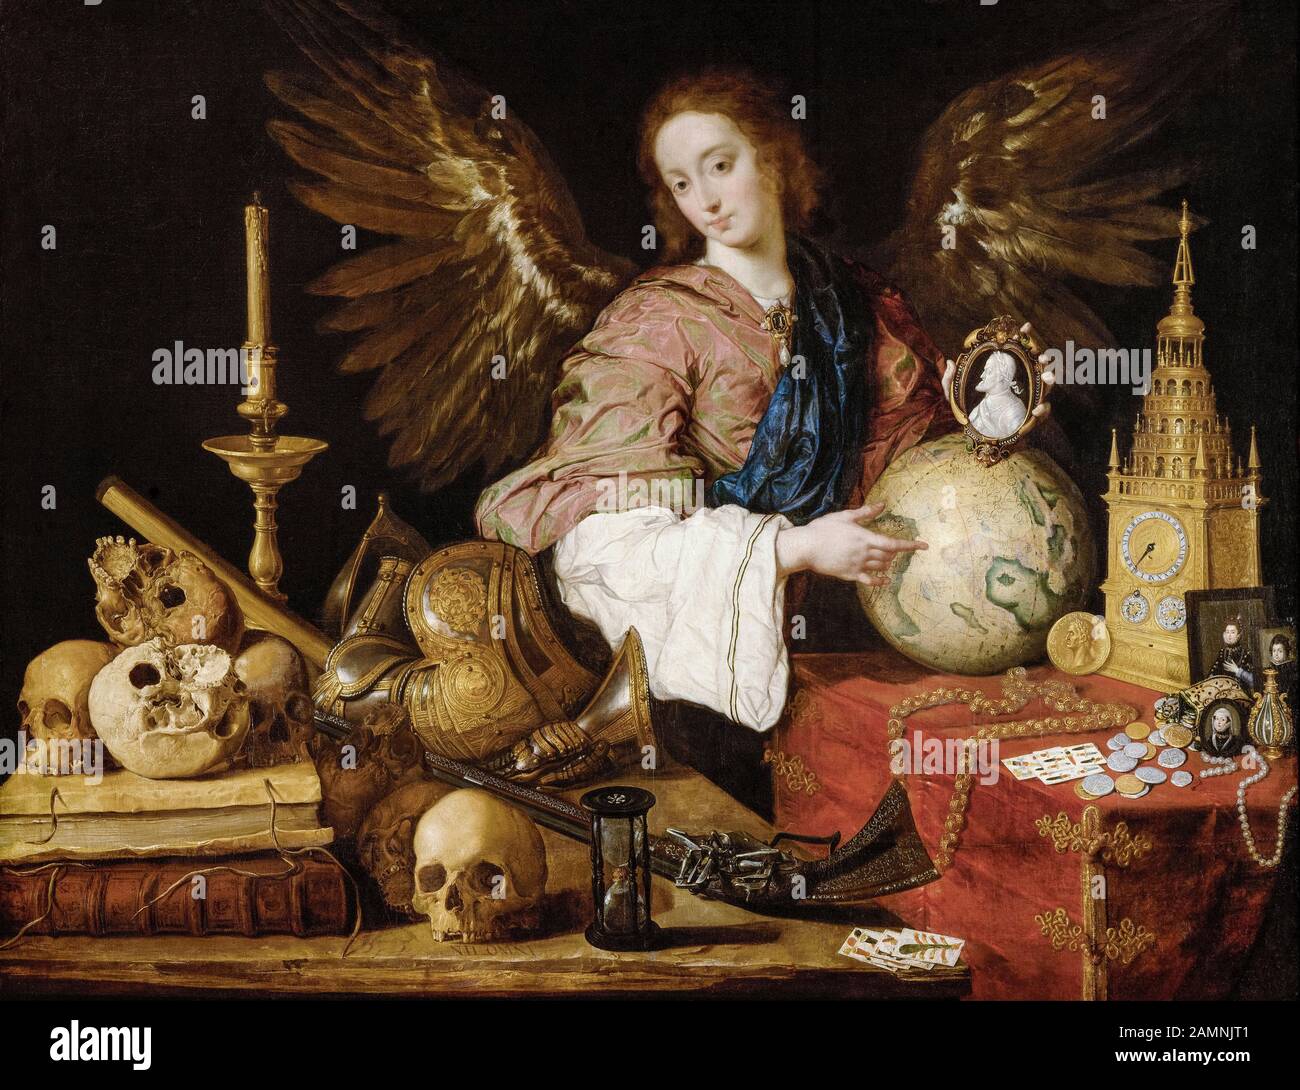 Antonio de Pereda, painting, Allegory of Vanity, 1632-1636 Stock Photo